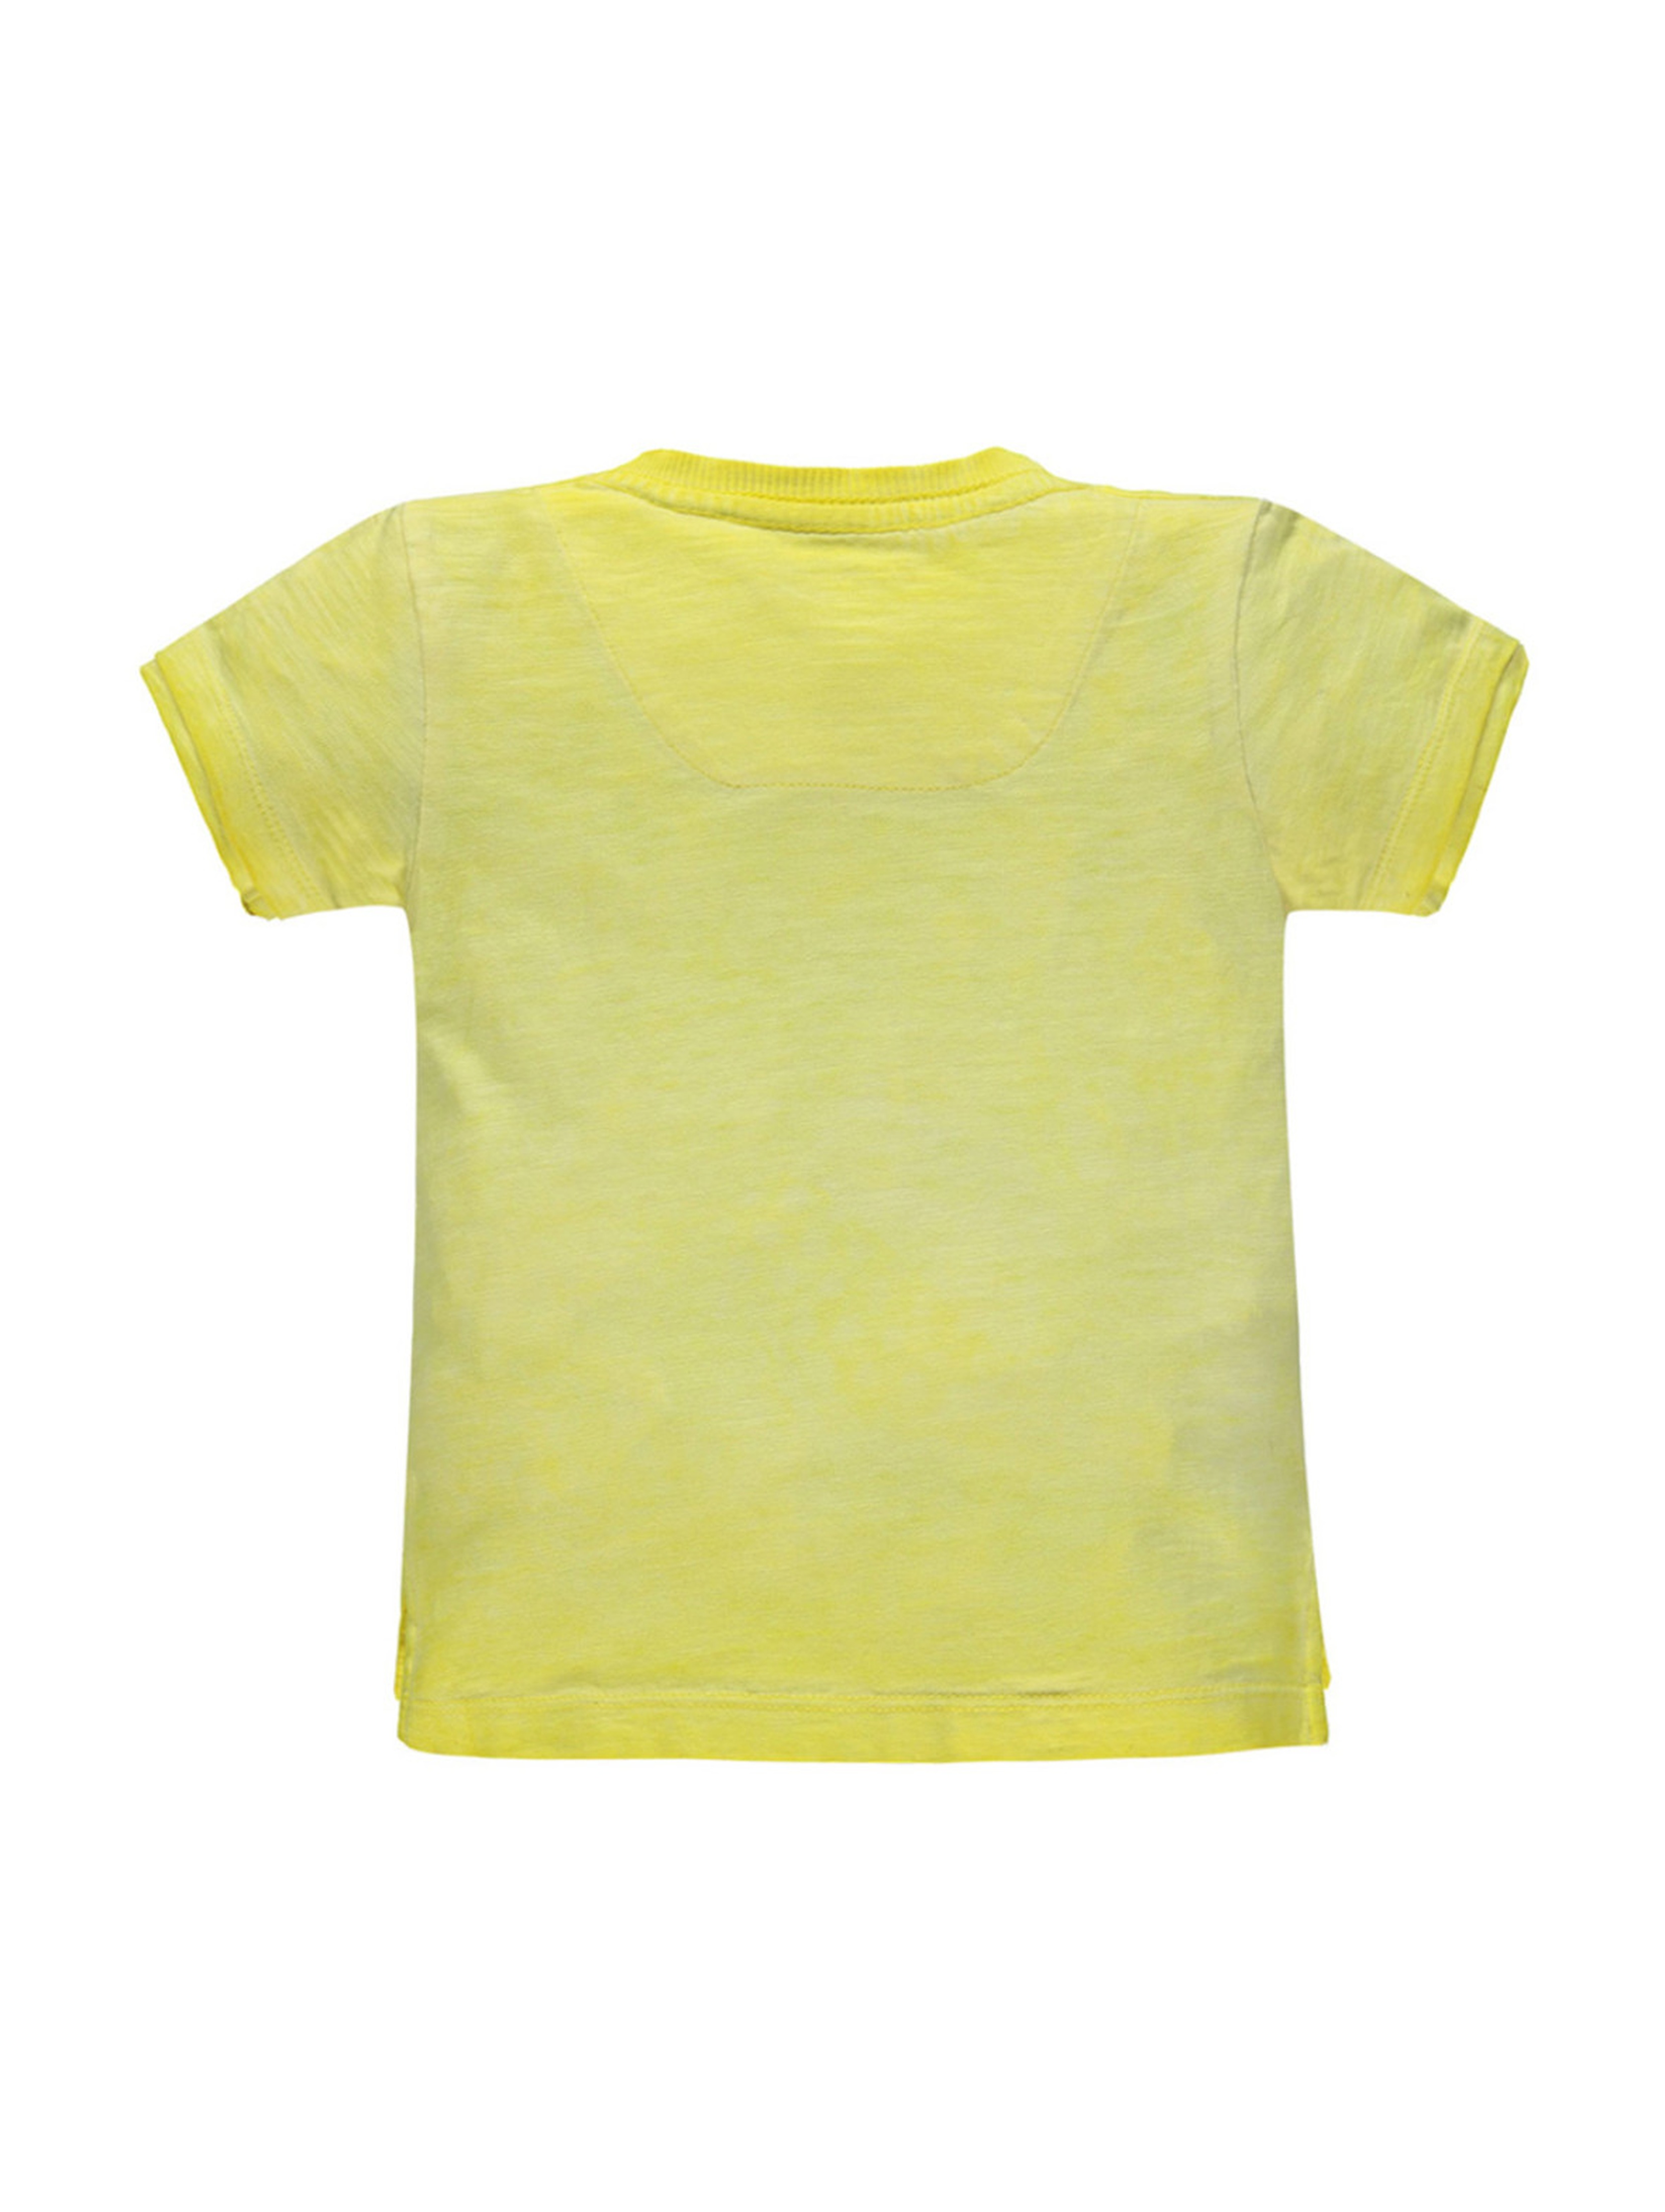 Chłopięca koszulka z krótkim rękawem żółta